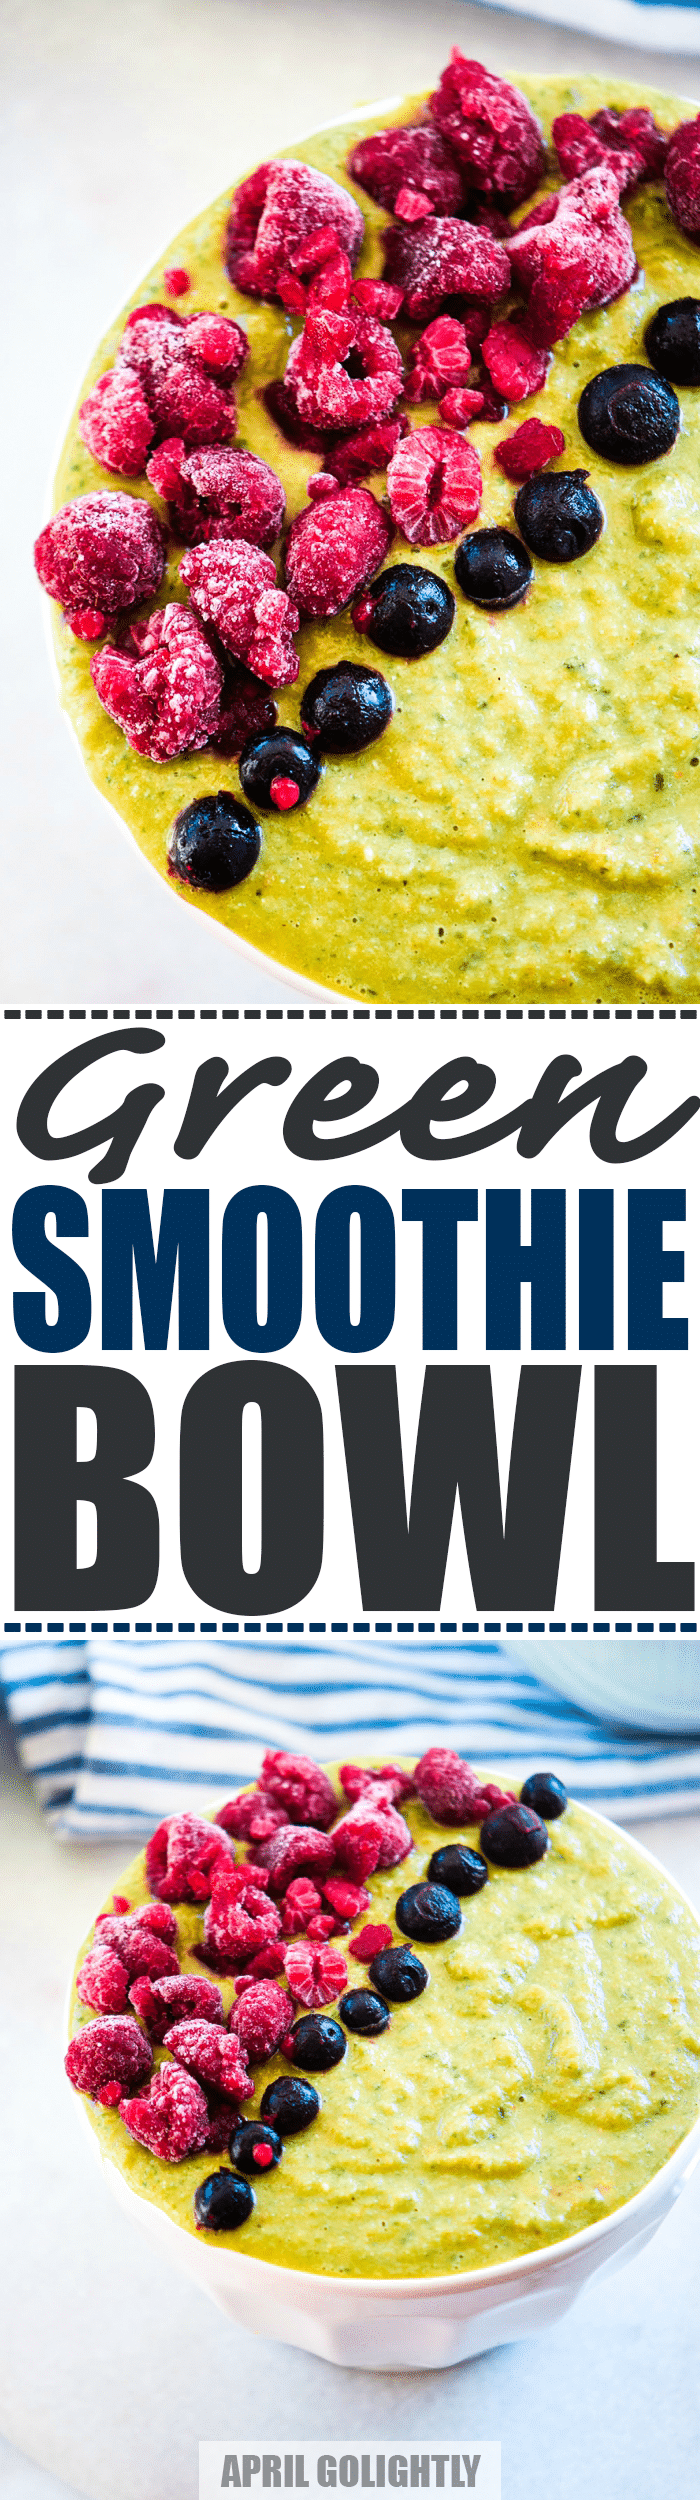 big-green-smoothie-bowl